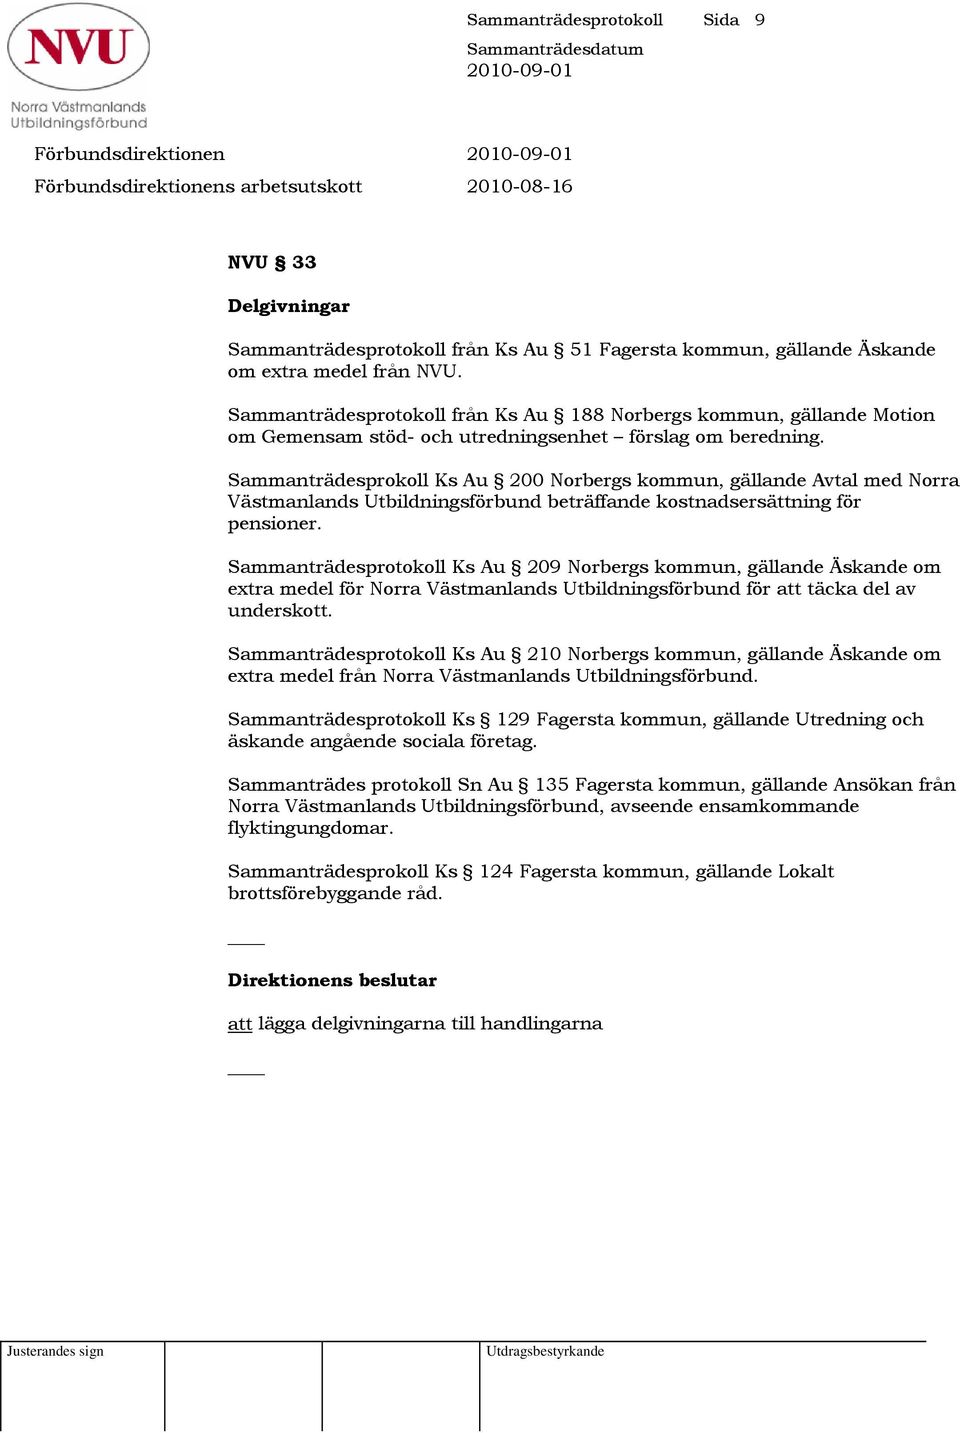 Sammanträdesprokoll Ks Au 200 Norbergs kommun, gällande Avtal med Norra Västmanlands Utbildningsförbund beträffande kostnadsersättning för pensioner.